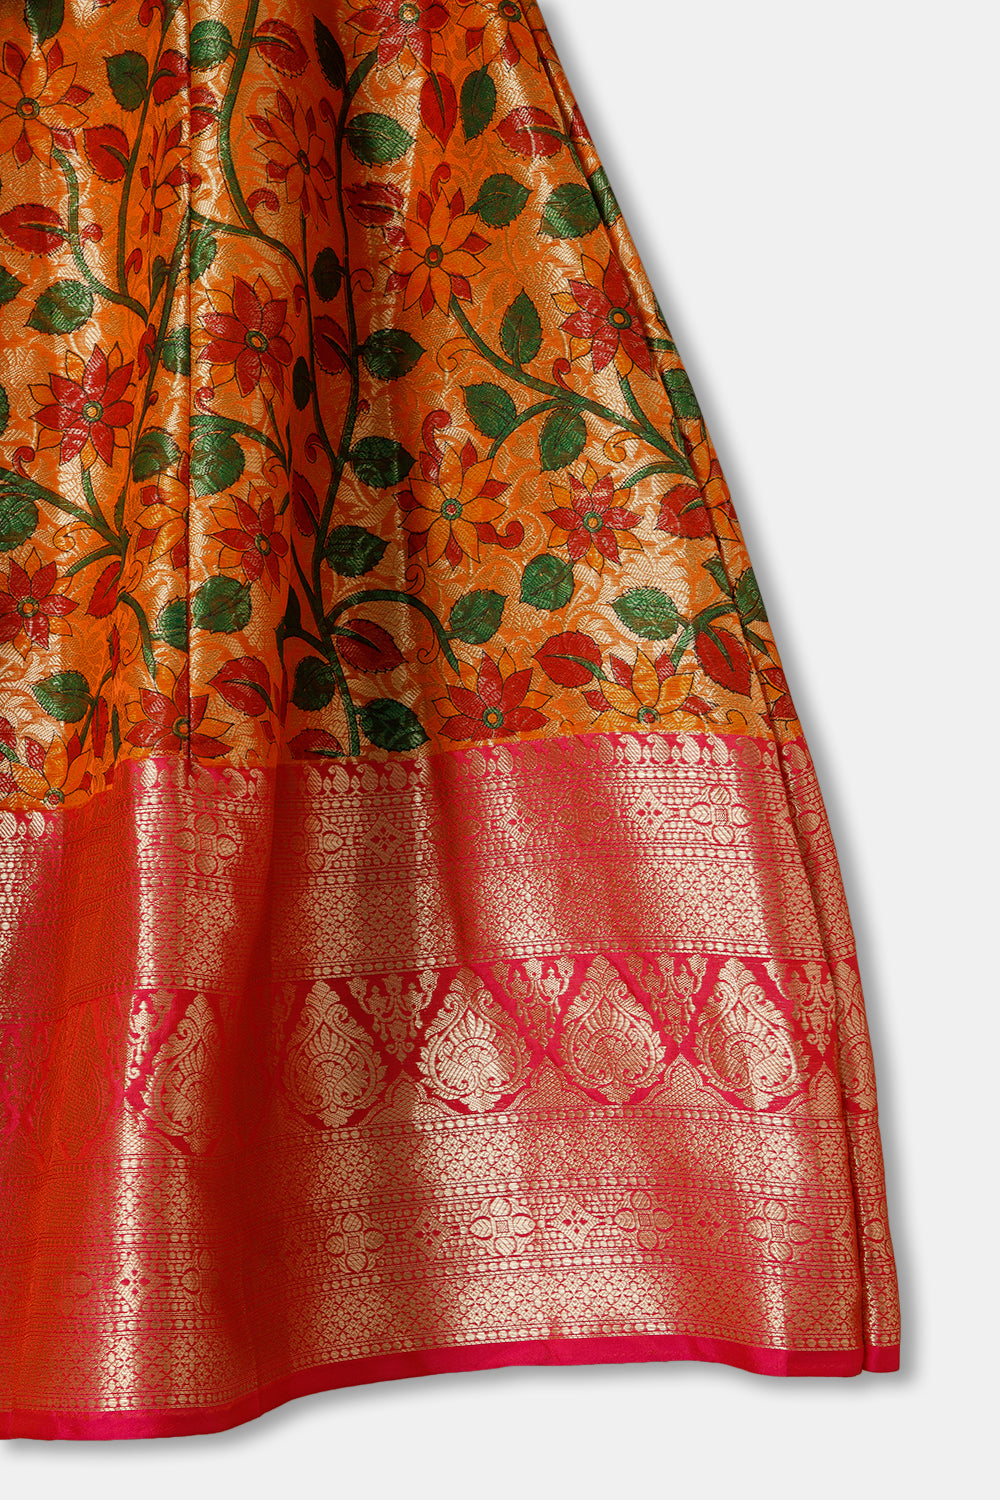 Chittythalli Girls Ethnic wear Cotton blend  Pavadai Set with Round Neck Puff Sleeve - Green - PS36